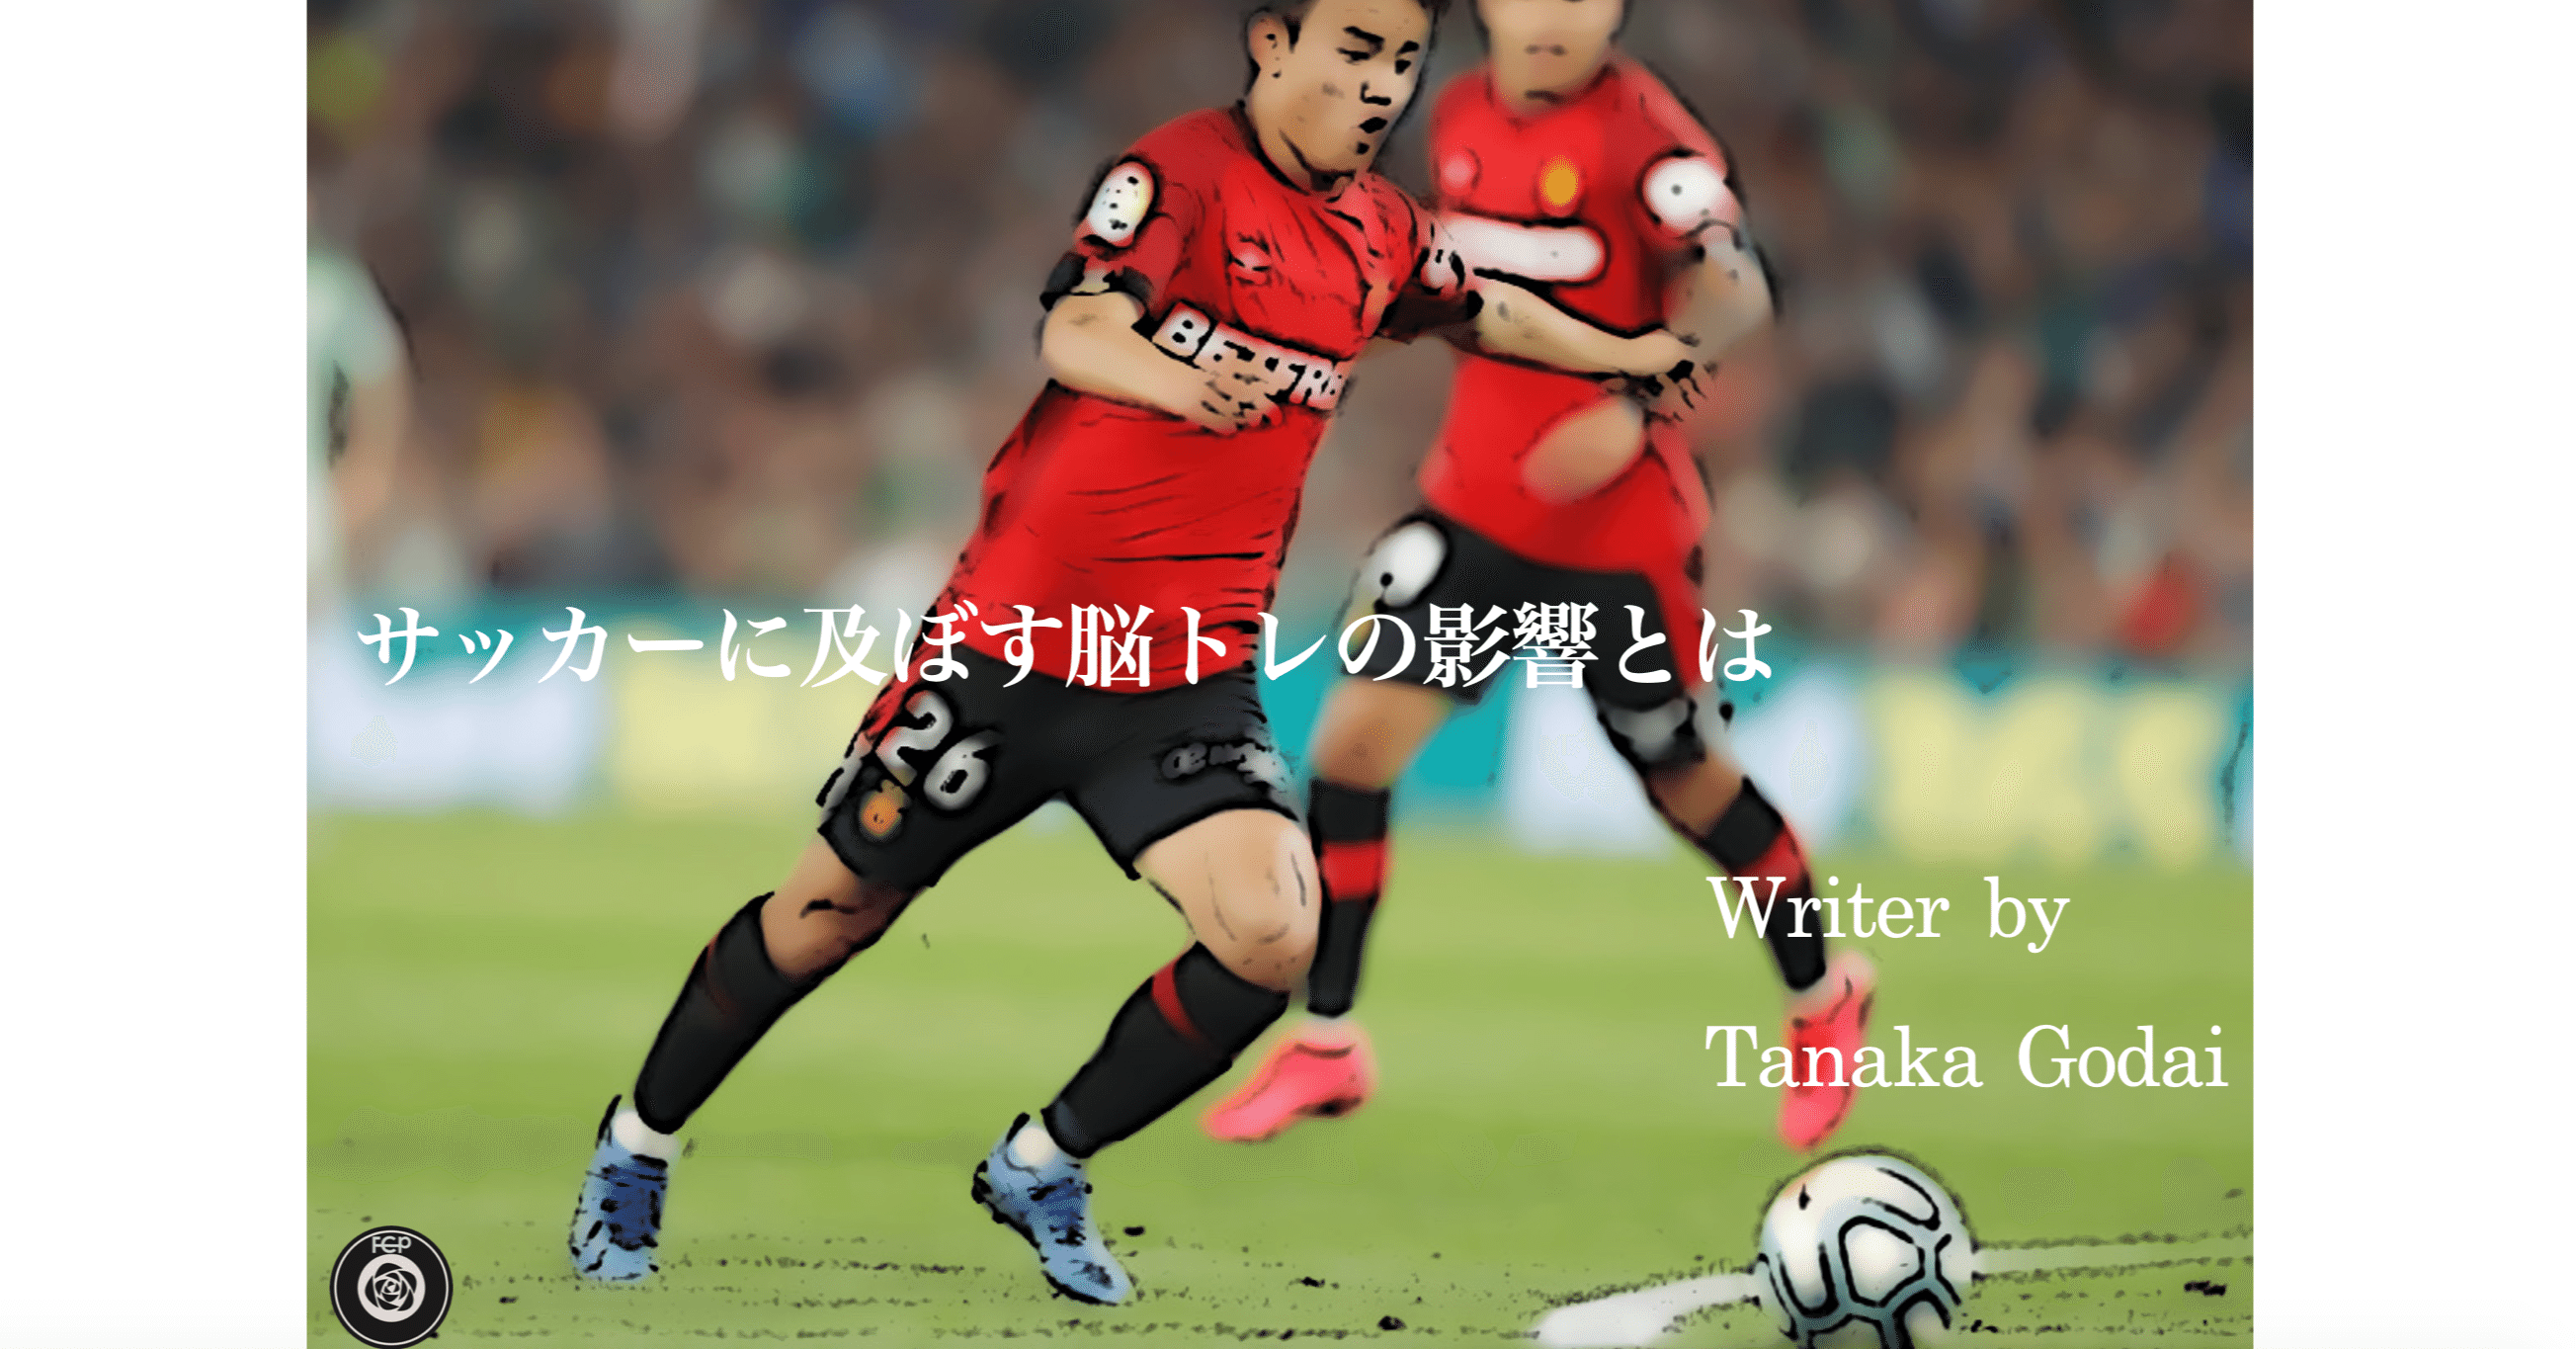 サッカーに及ぼす脳トレの影響 Tanaka Godai Note